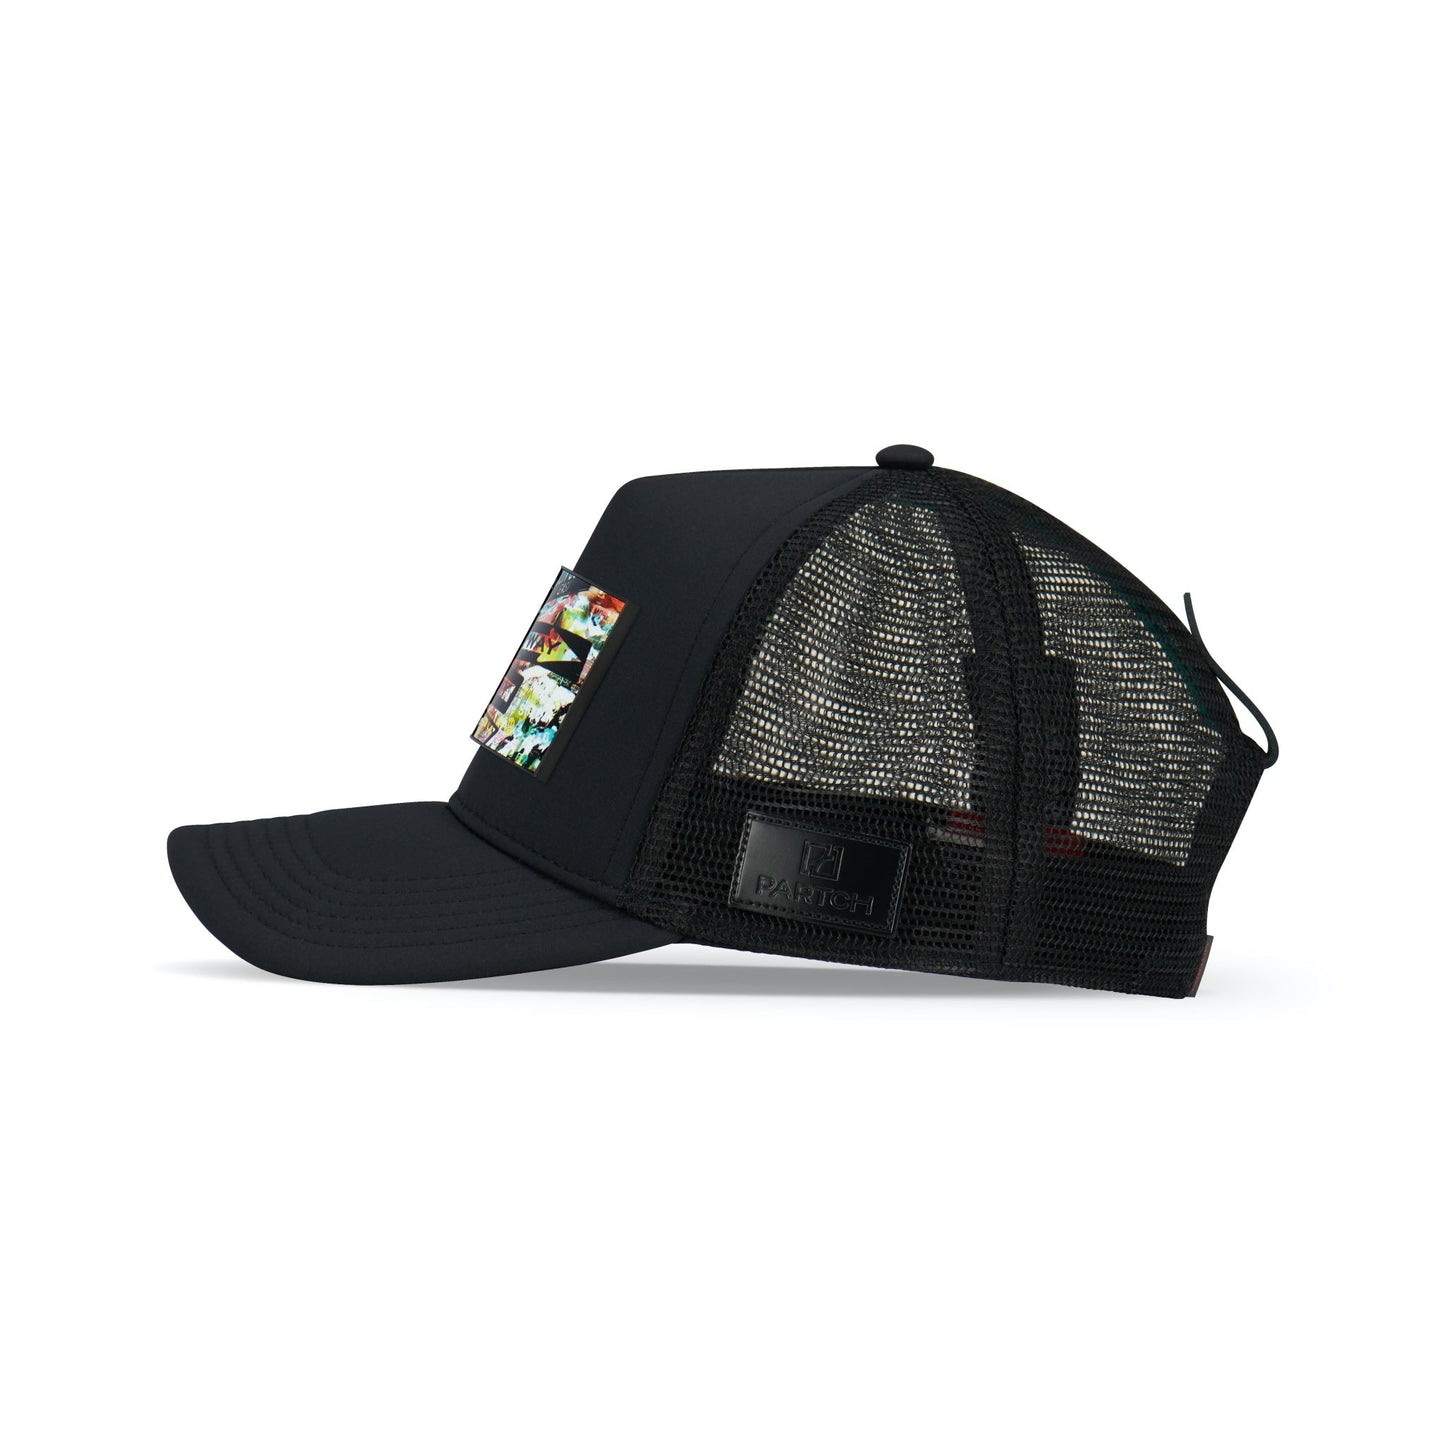 Partch Trucker Hat Black with PARTCH-Clip Unixvi Side View